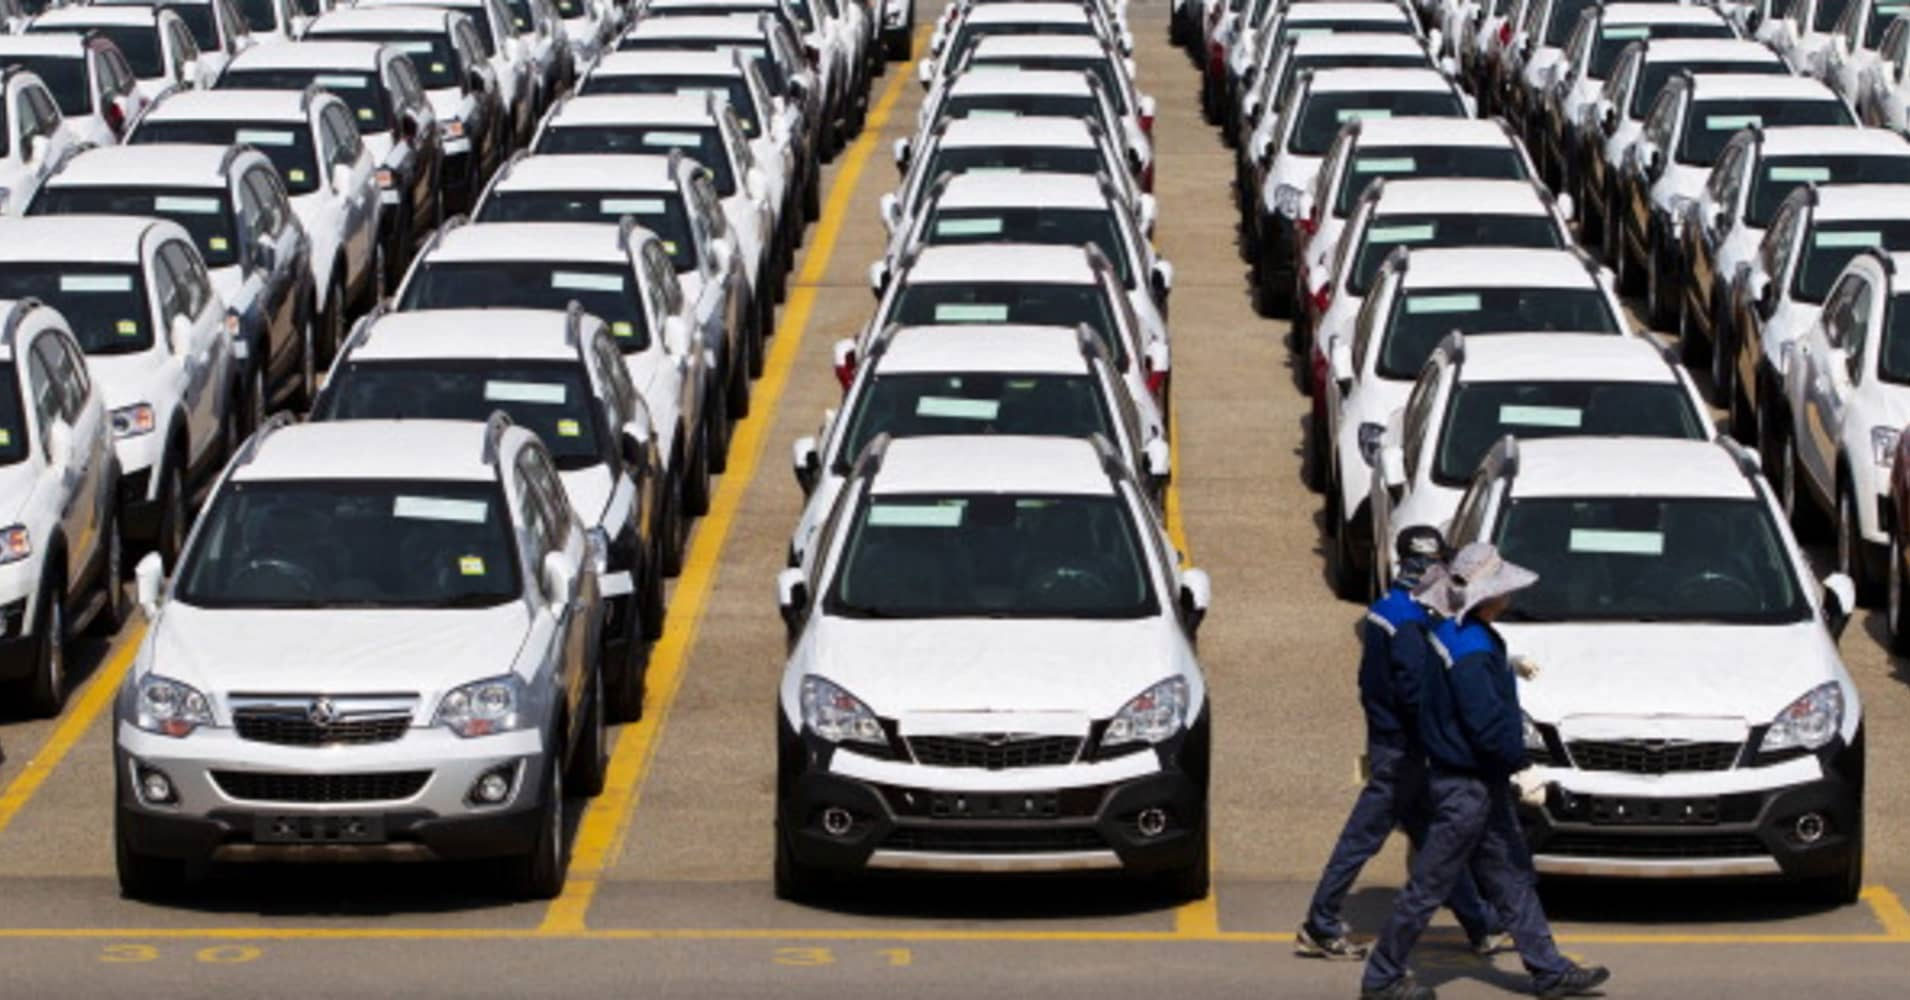 جنرال موتورز كوريا وكيا وبورشه تستدعي أكثر من 15 ألف سيارة بسبب مكونات معيبة